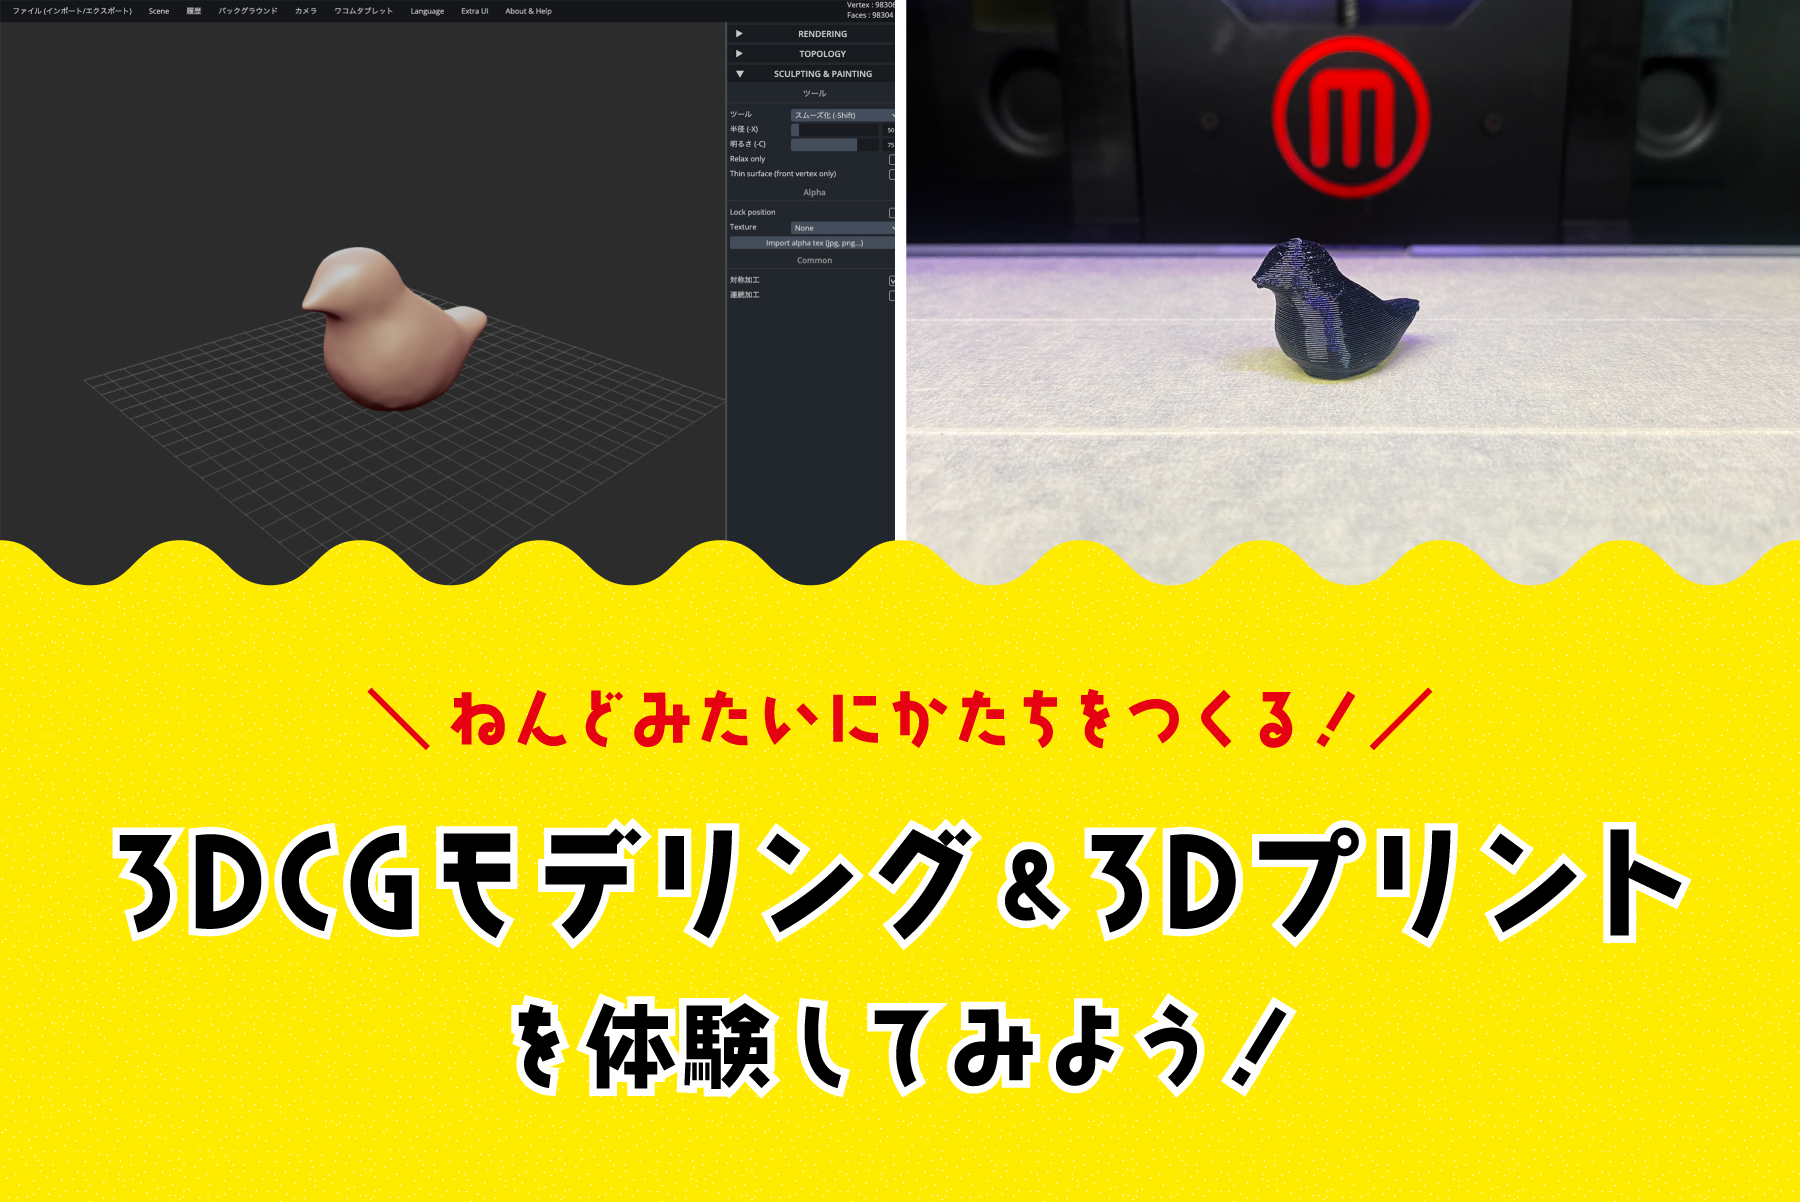 8/4, 16開催【3DCGモデリング&3Dプリントを体験してみよう！】